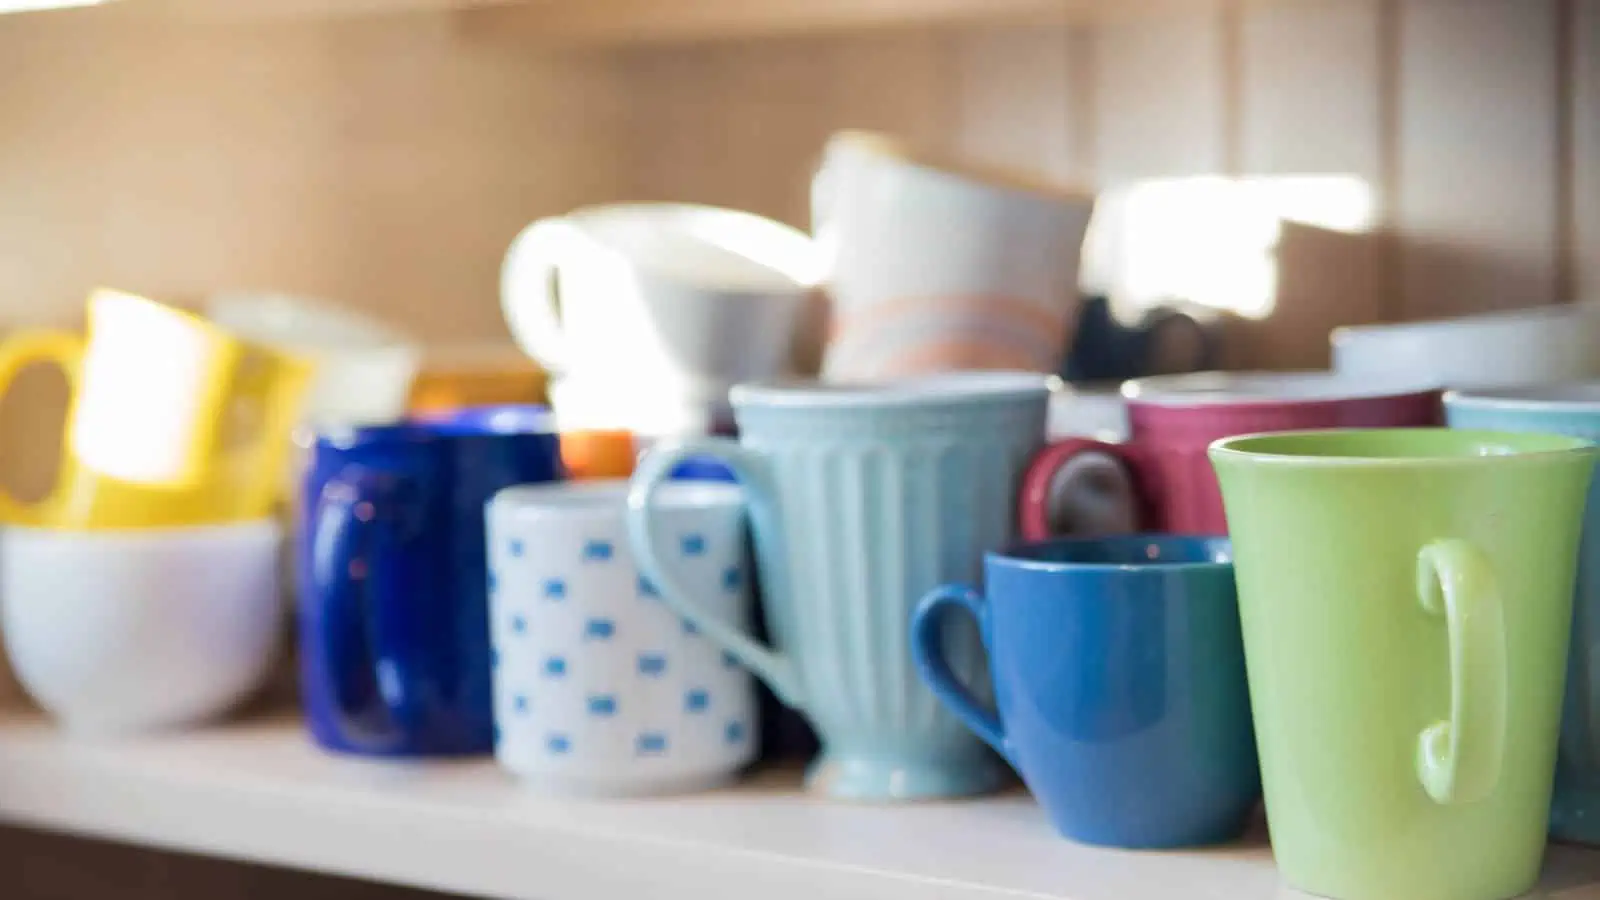 mugs on a kitchen shelf